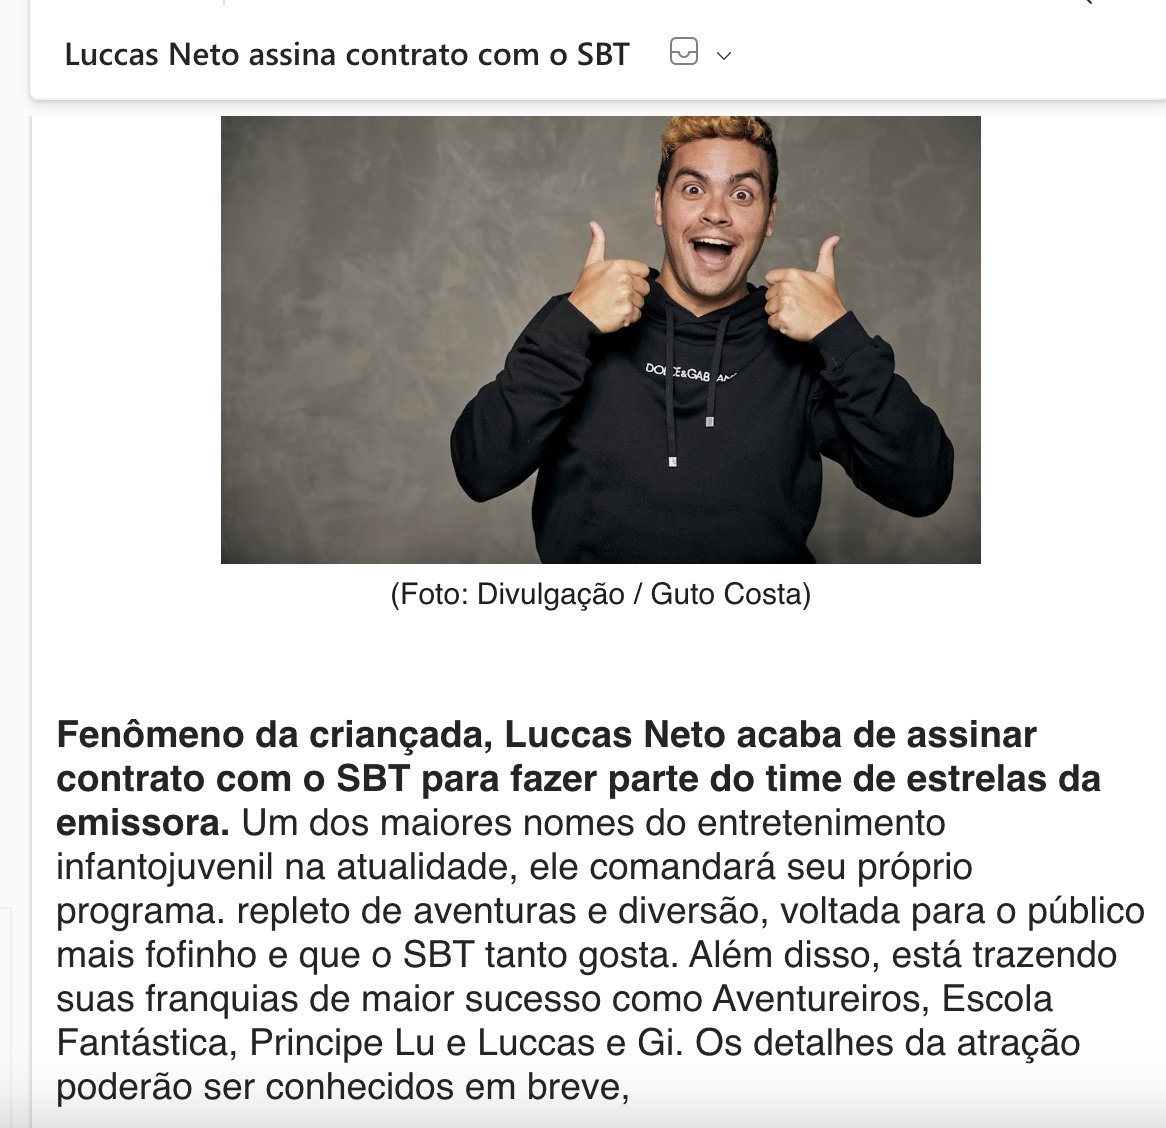 Luccas Neto assina contrato com o SBT